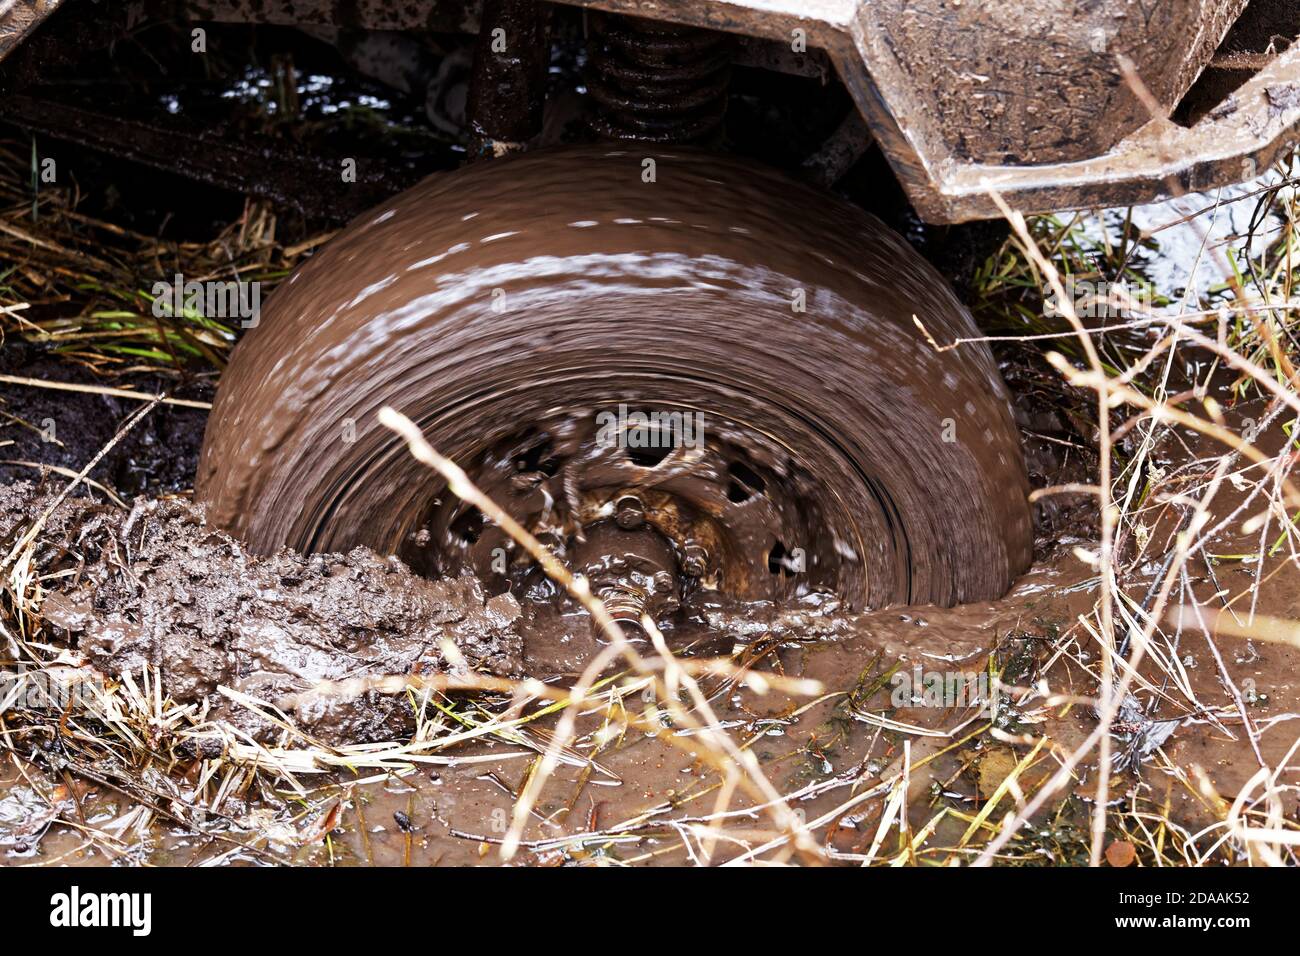 Veicolo bloccato nel fango. Closeup ruota rotante della macchina scivola nel fango nella palude. Foto Stock